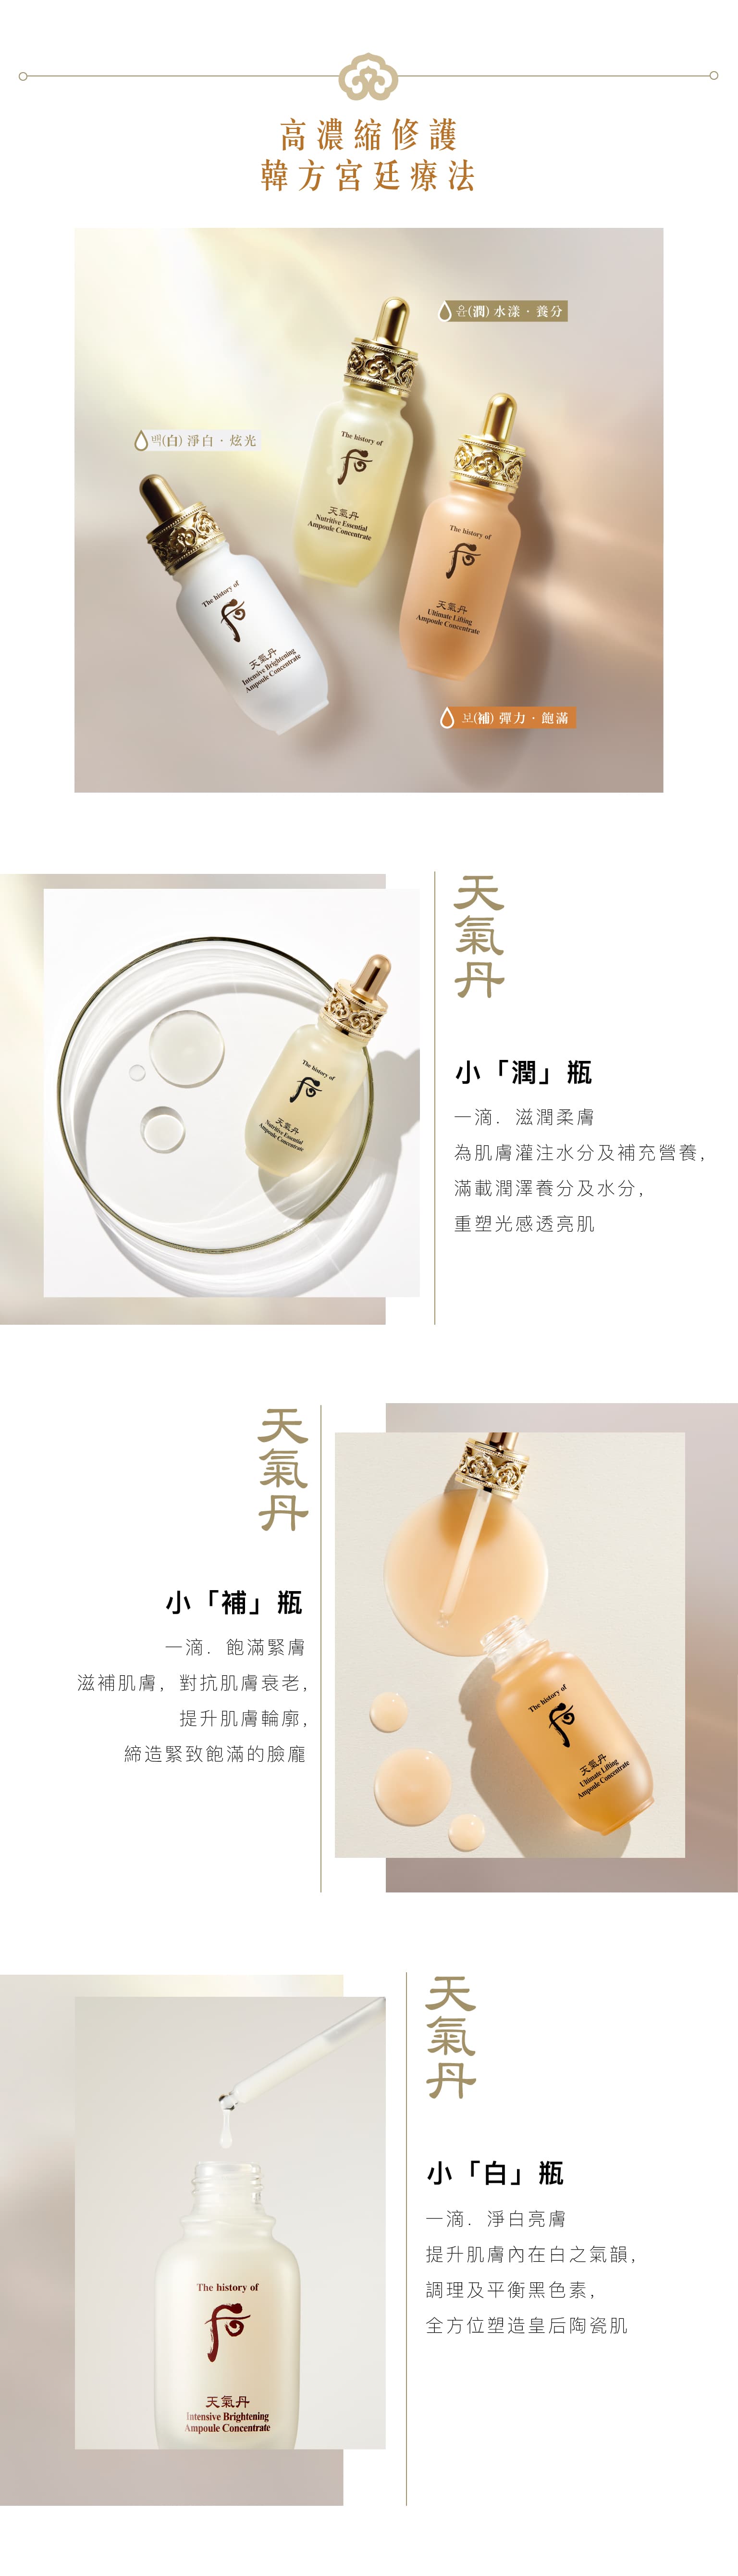 天氣丹 華炫安瓶 產品介紹